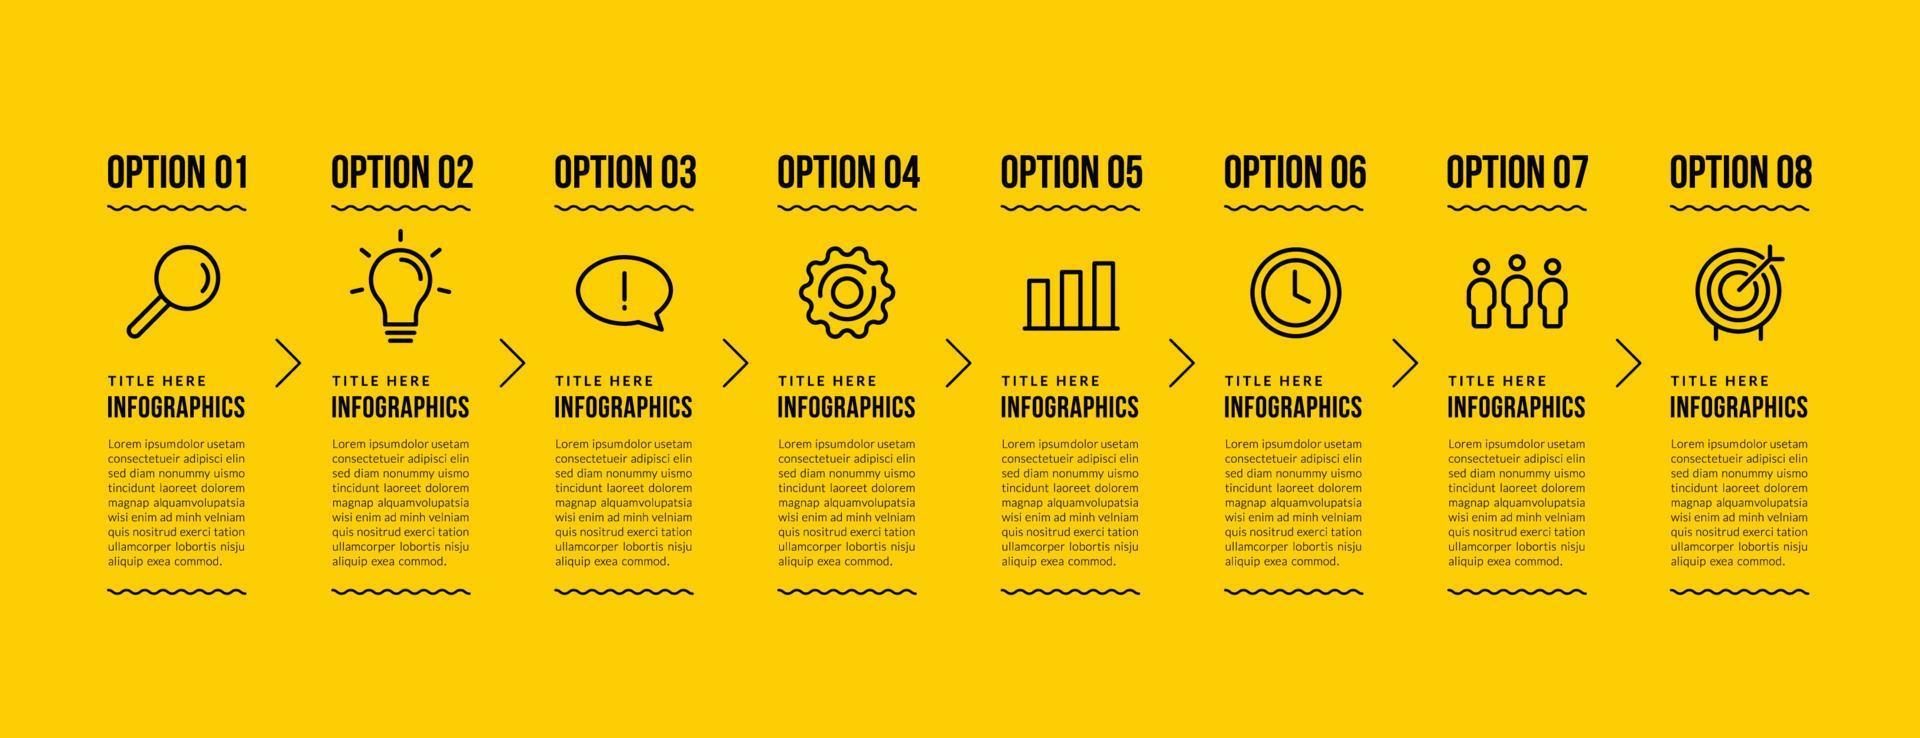 design de modelo de infográfico de negócios com 8 opções, conceito de etapas de visualização de dados de negócios, estilo de ícones de linha fina em fundo amarelo vetor